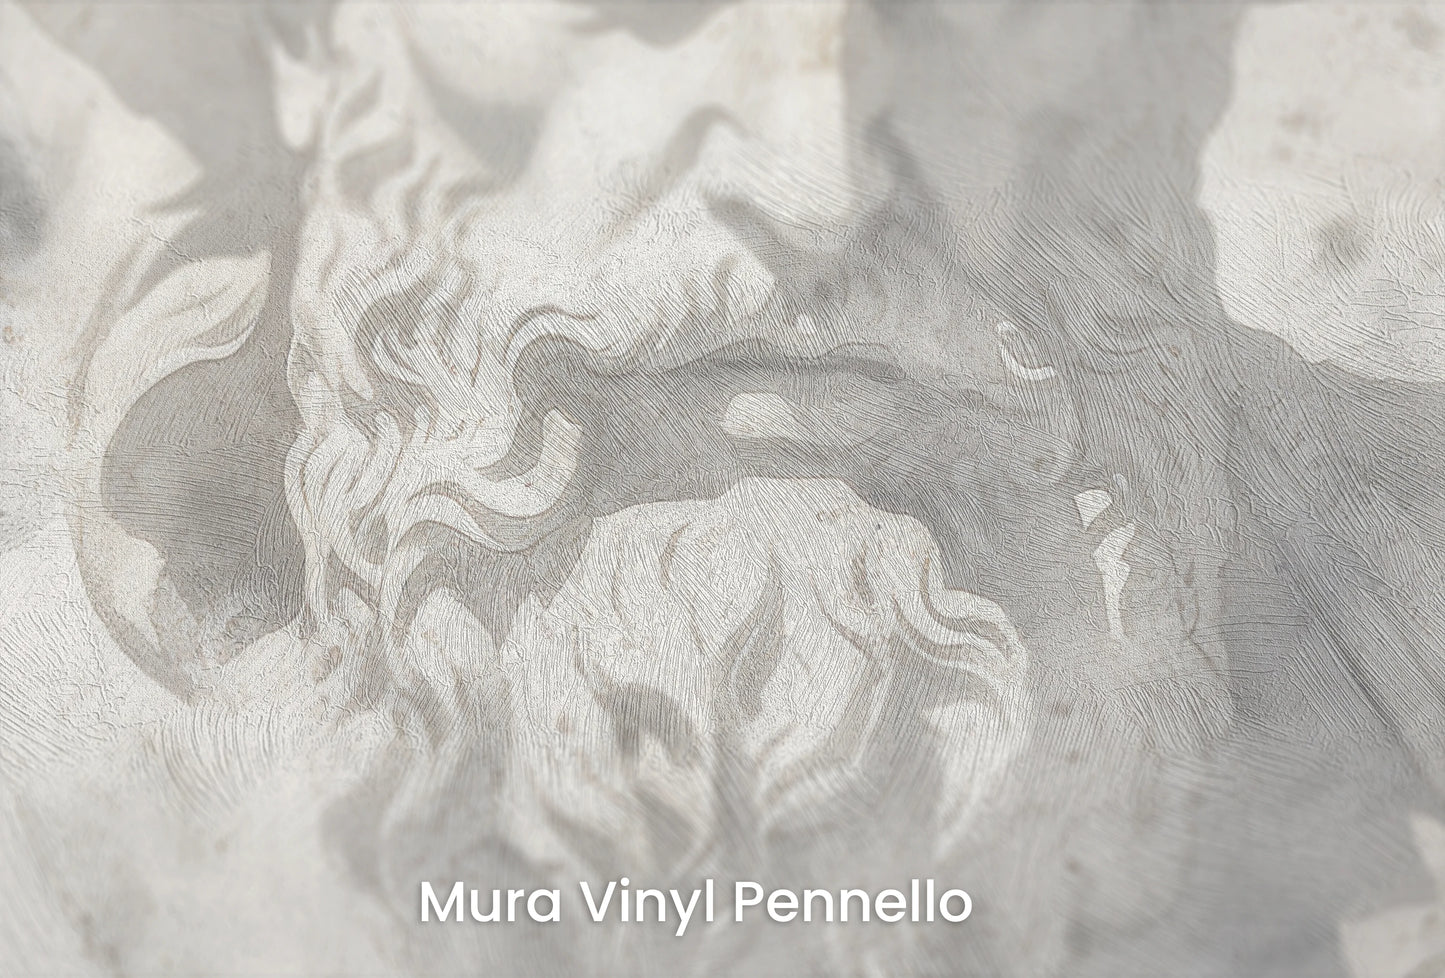 Zbliżenie na artystyczną fototapetę o nazwie Mythical Echoes na podłożu Mura Vinyl Pennello - faktura pociągnięć pędzla malarskiego.